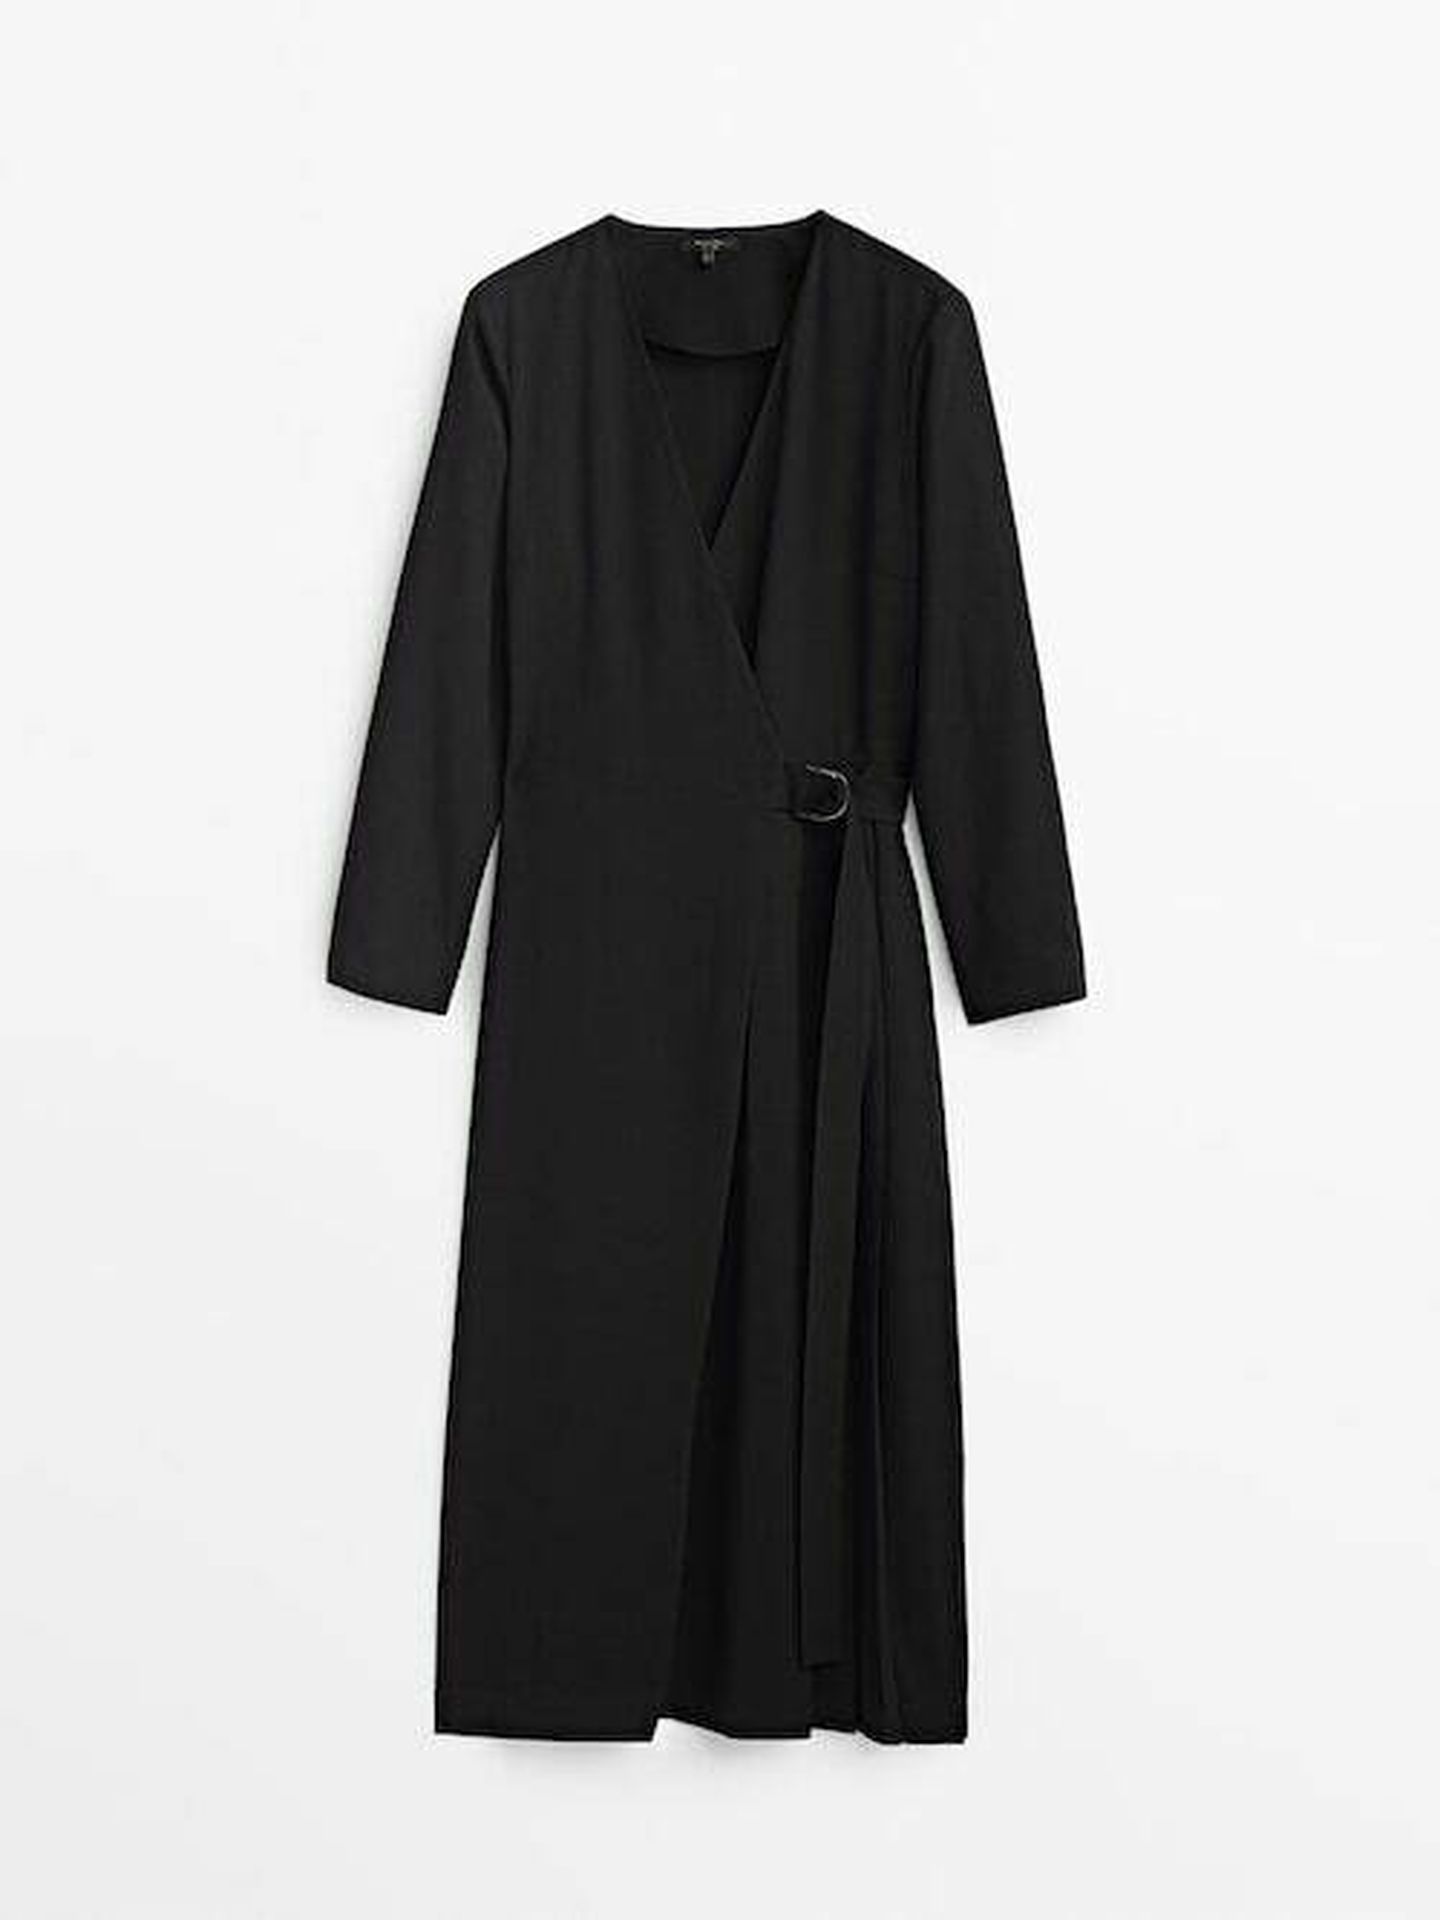 El nuevo vestido negro de Massimo Dutti. (Cortesía)